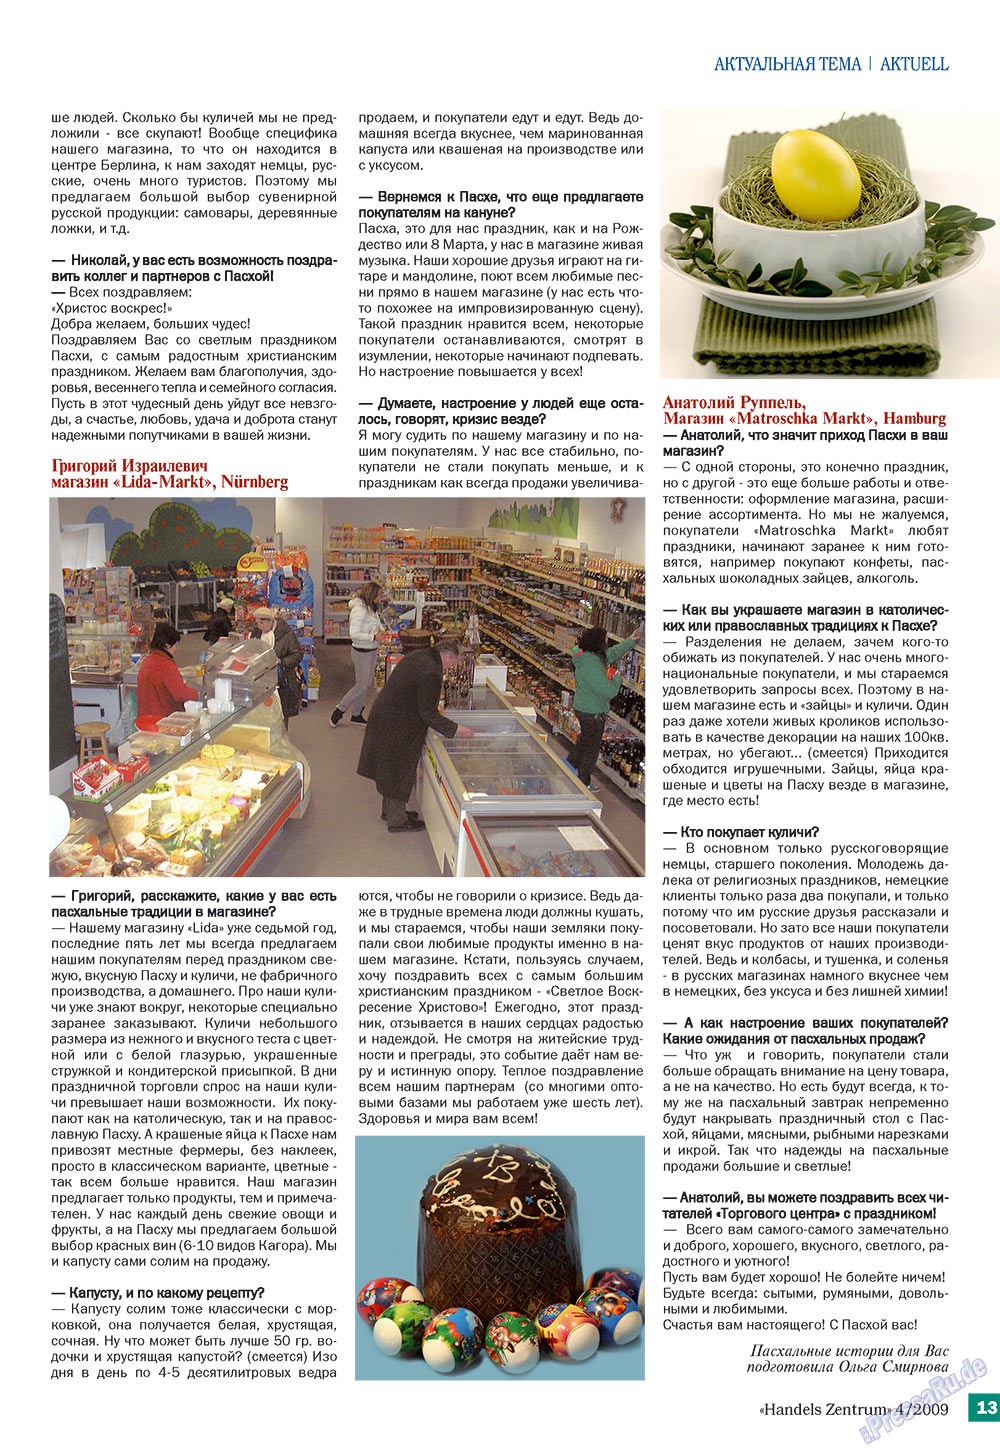 Handels Zentrum (Zeitschrift). 2009 Jahr, Ausgabe 4, Seite 13